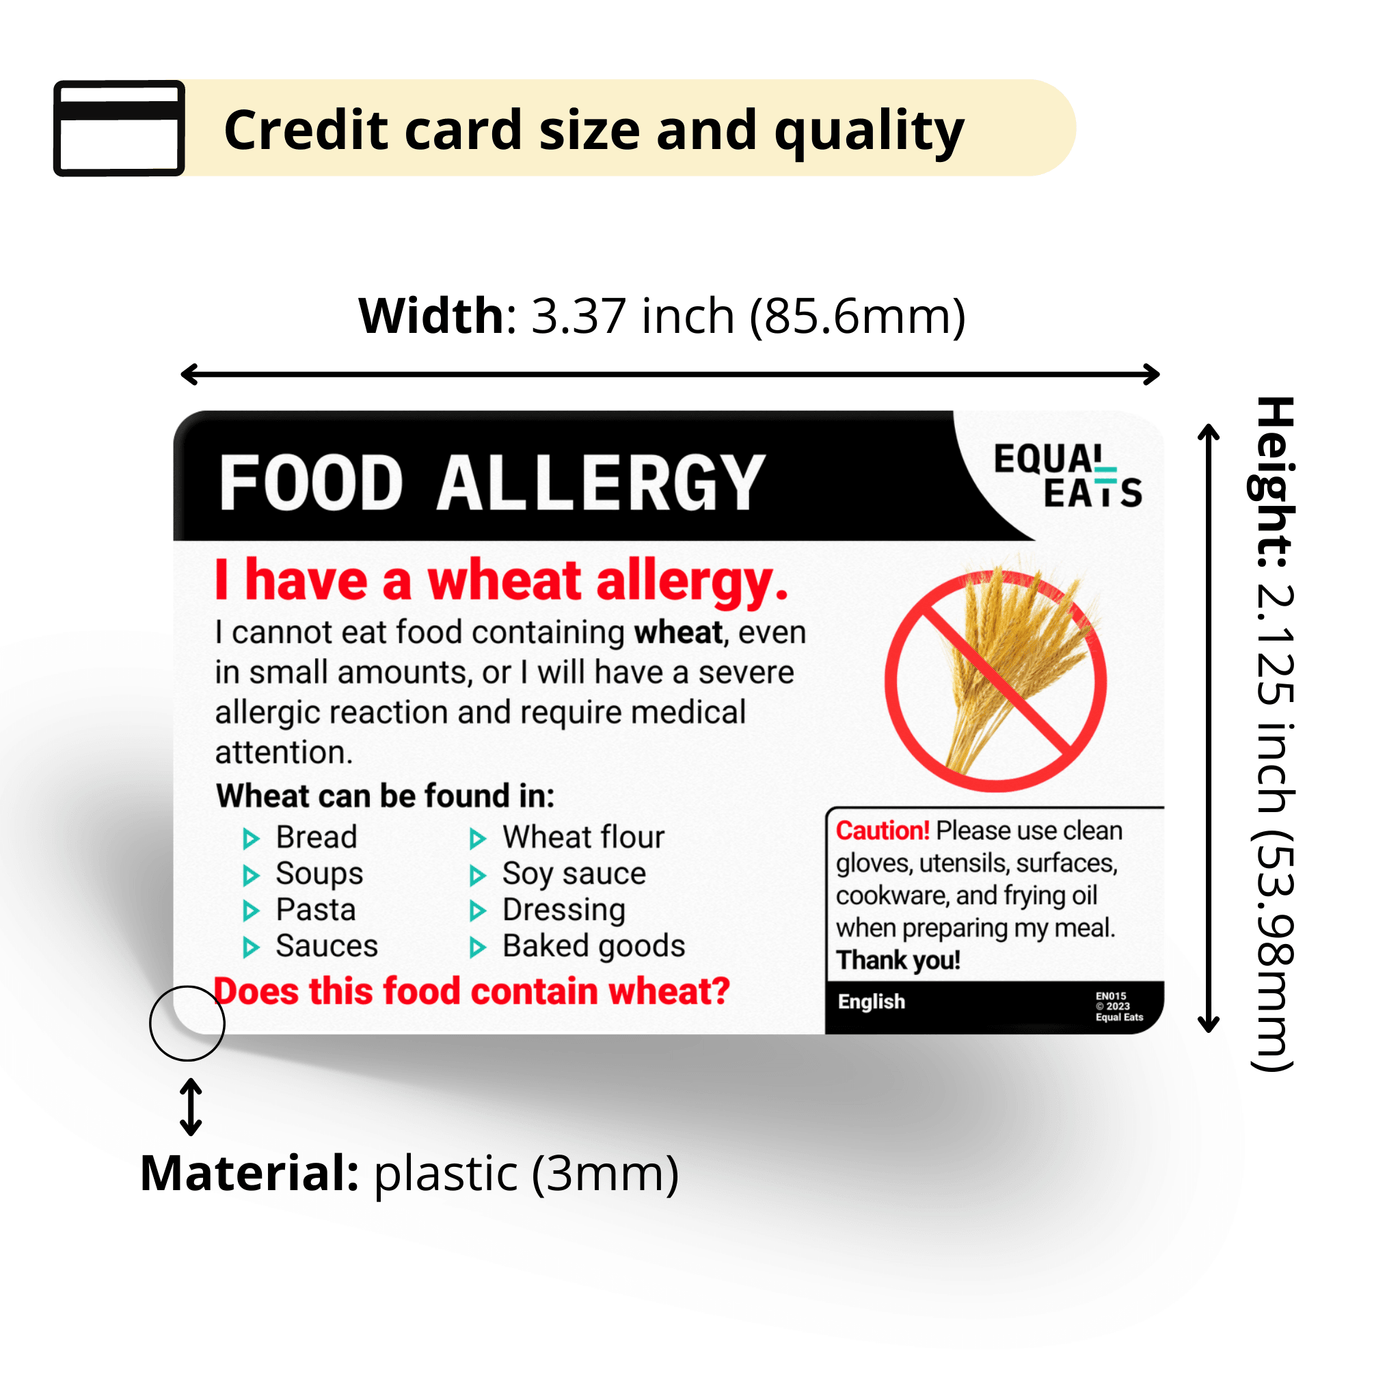 Bulgarian Wheat Allergy Card